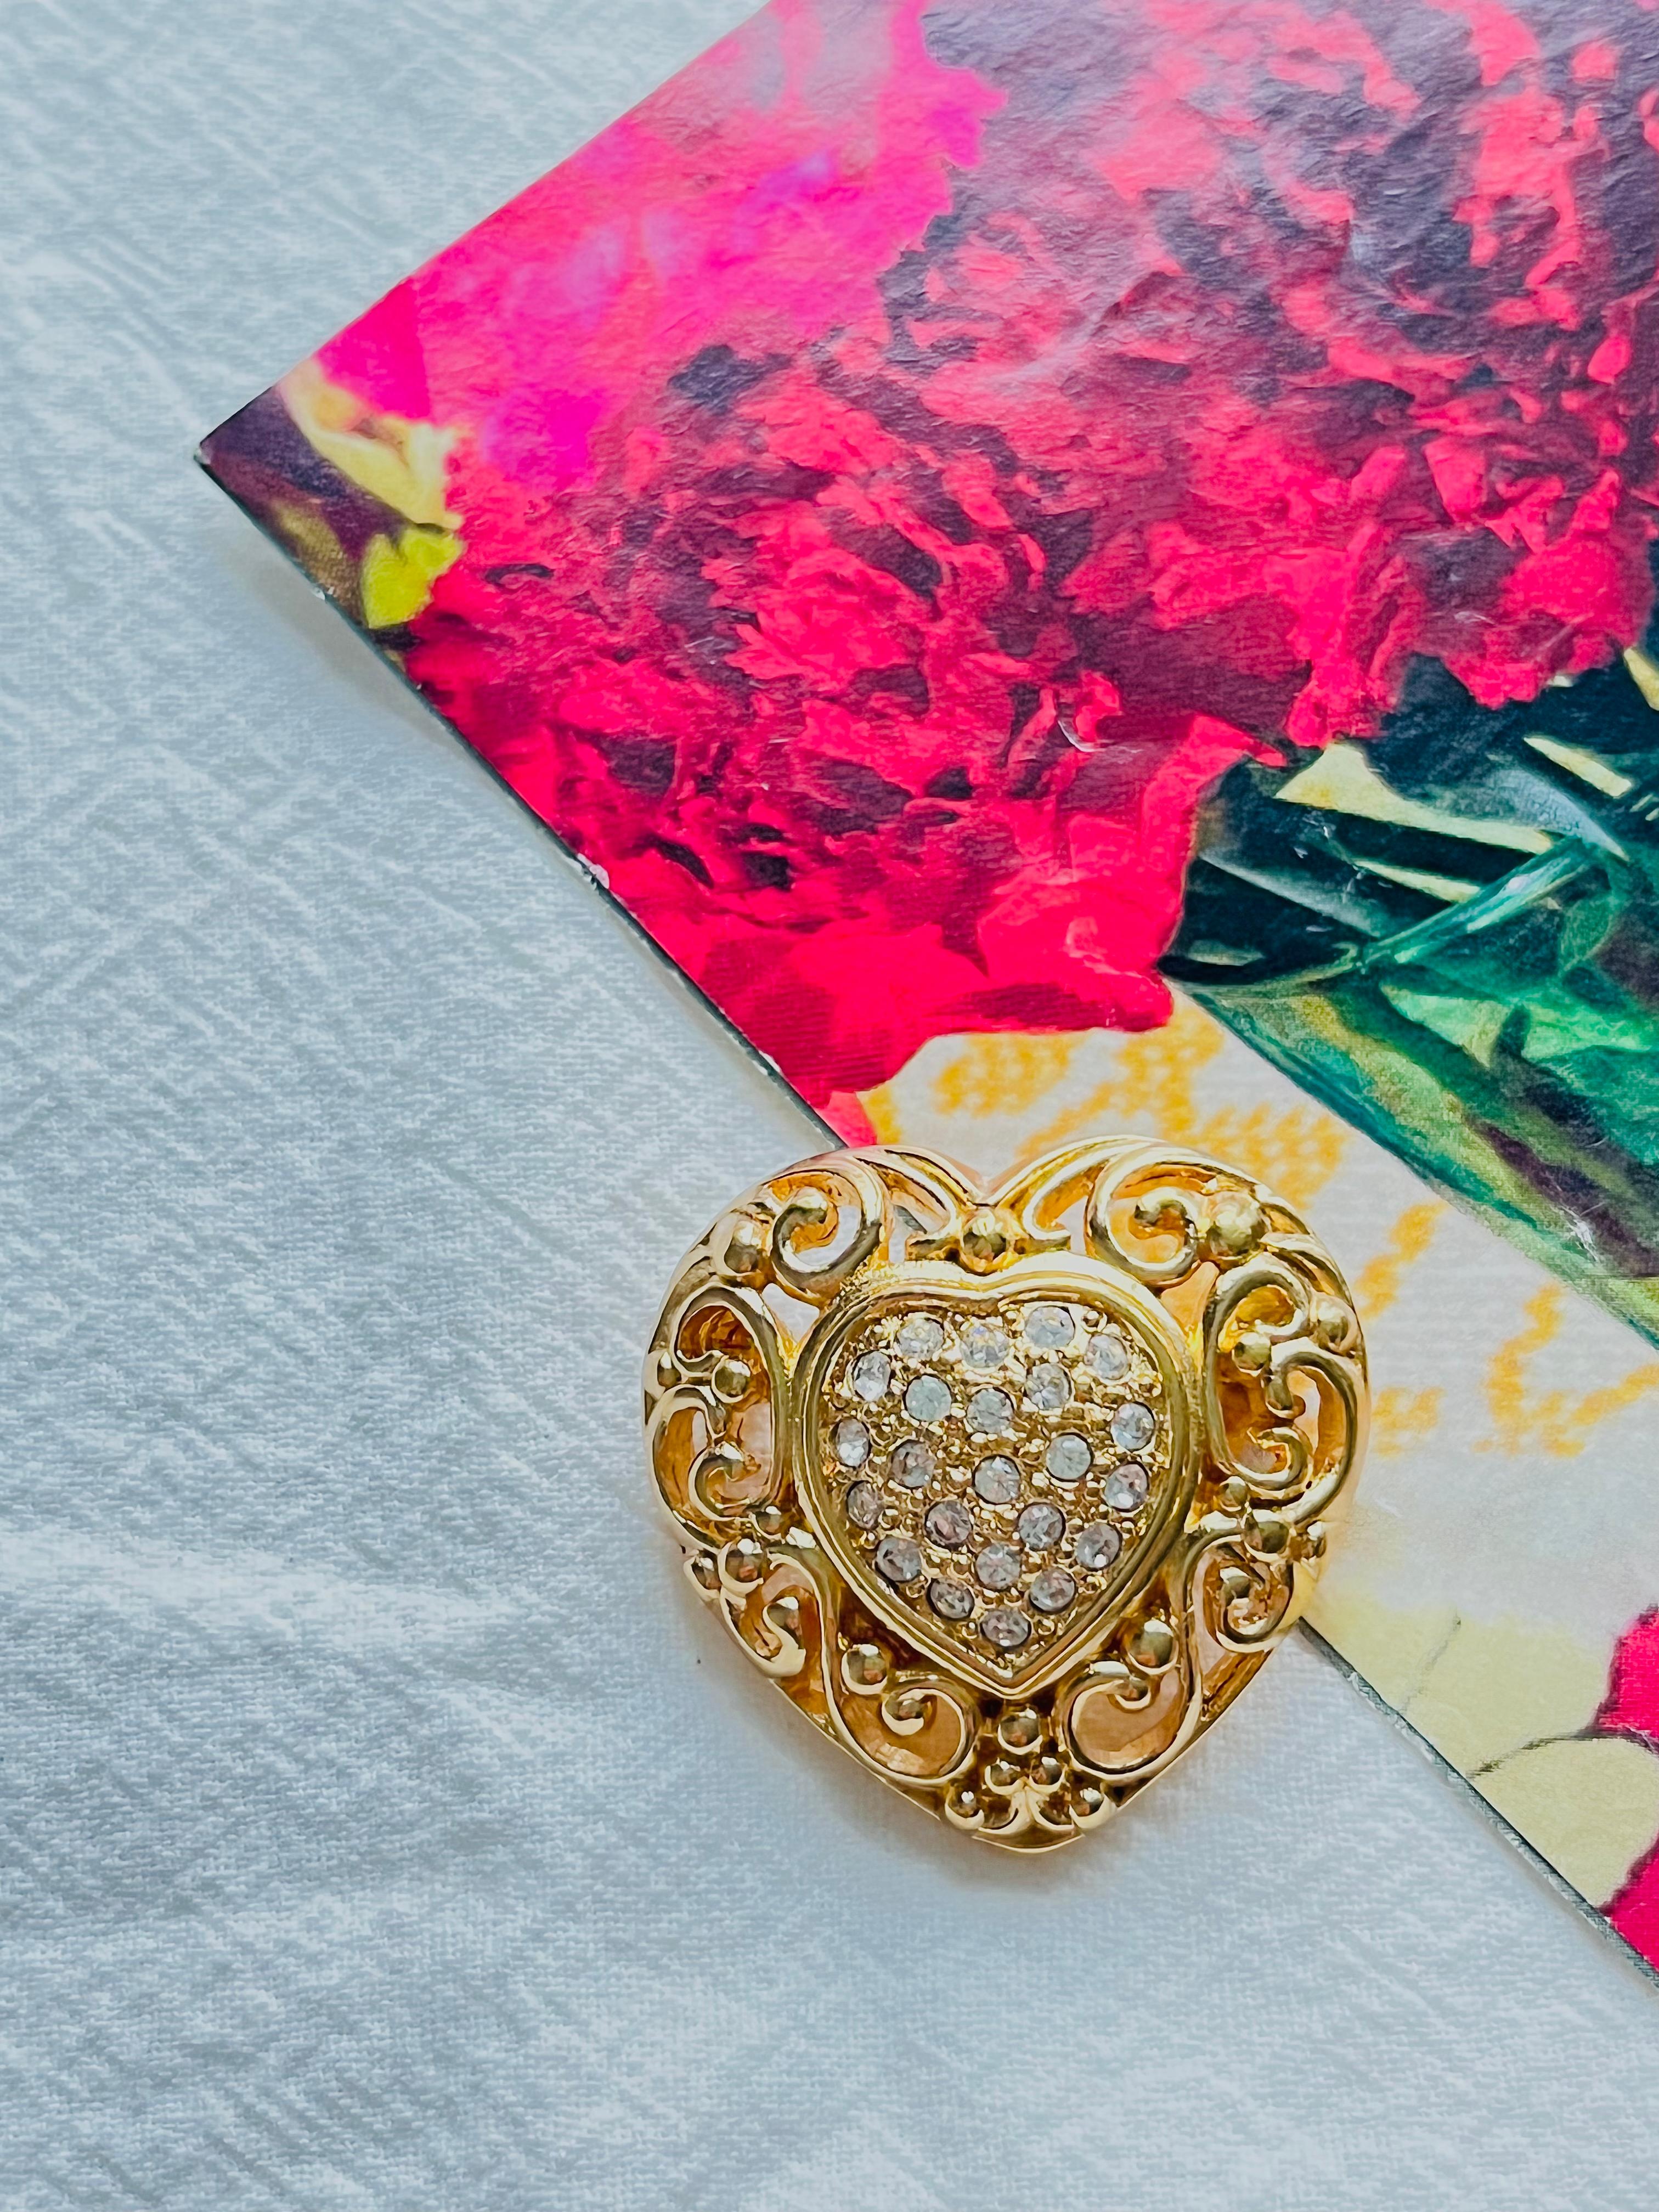 Christian Dior 1980s Vintage Weiße Kristalle Herz Liebe Durchbrochene Brosche, Gold-Ton

Sehr guter Zustand. 100% echt.

Ein Unikat. Diese stilisierte Brosche ist vergoldet.

Verschluss mit Sicherheitsnadel.

Größe: 3,2 cm x 3,0 cm.

Gewicht: 15.0